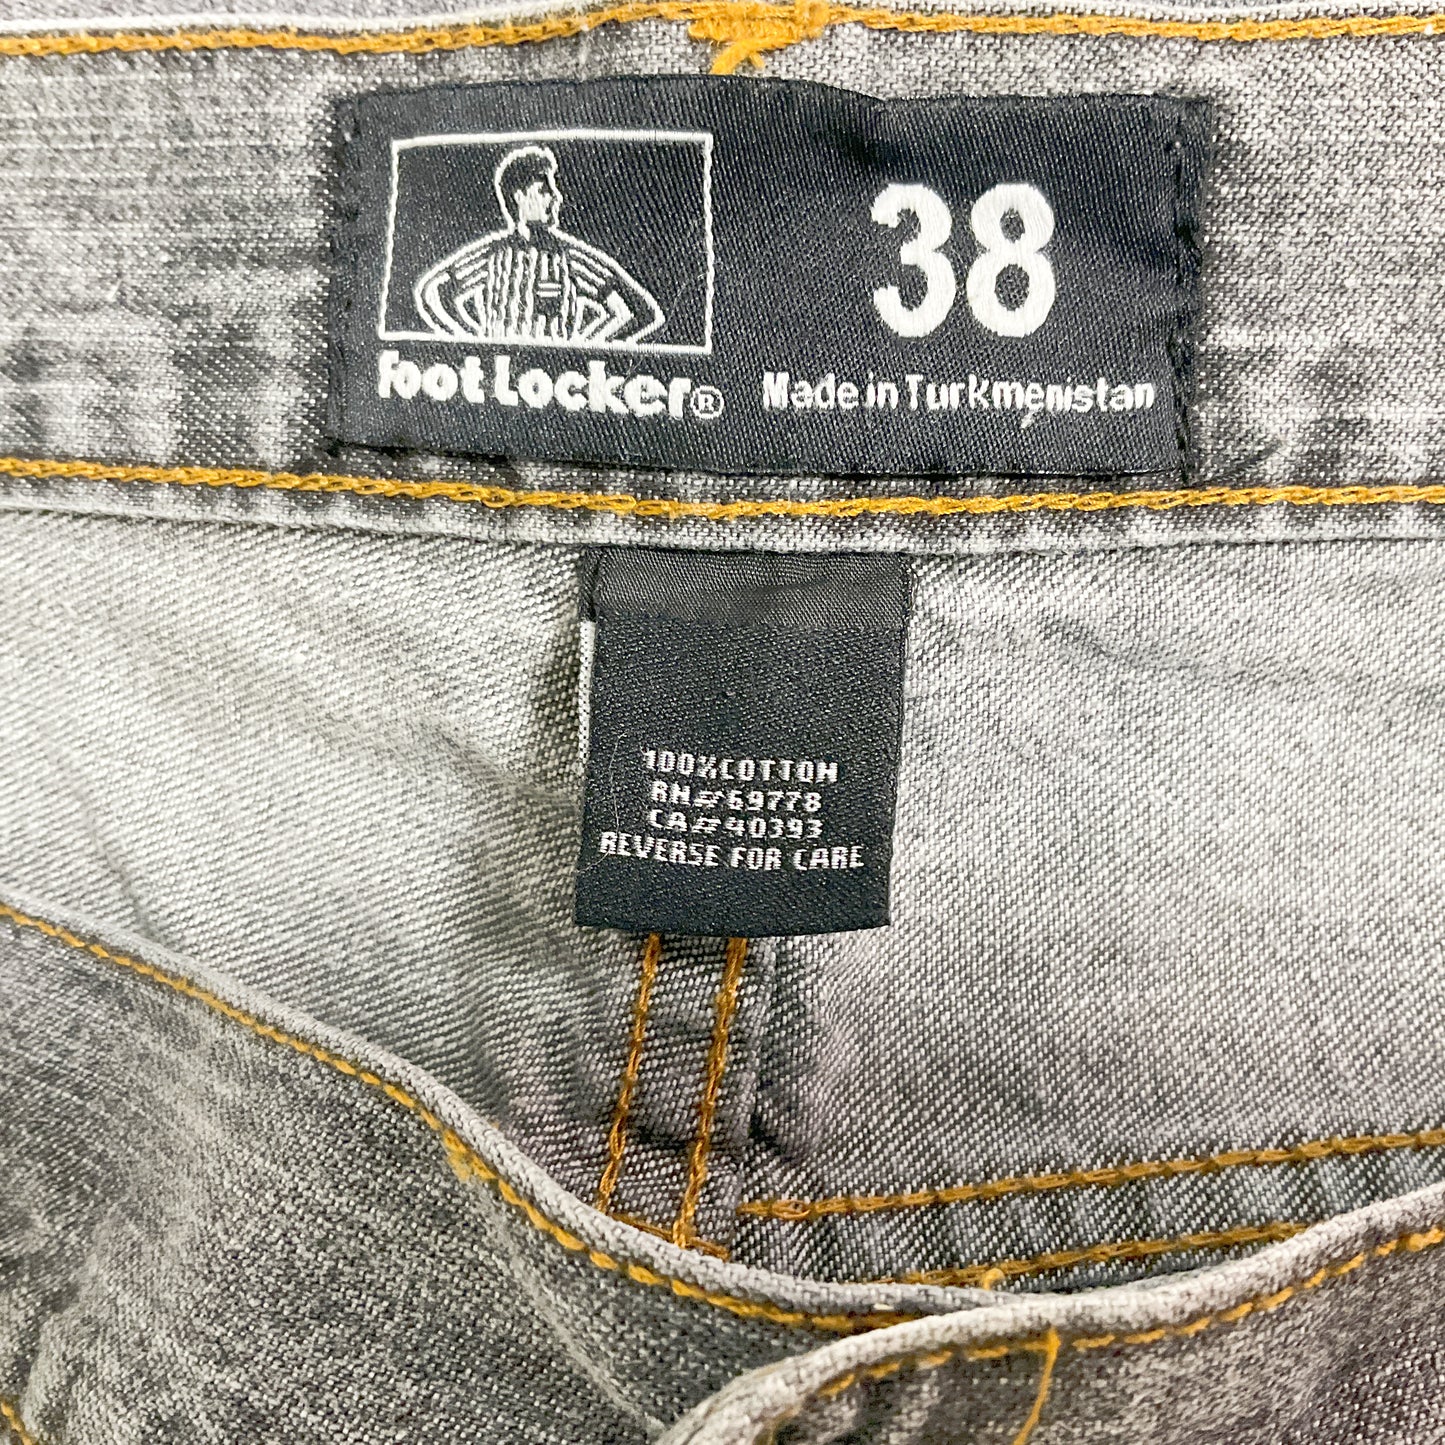 Foot Locker - Dark Grey Short Jeans for Men